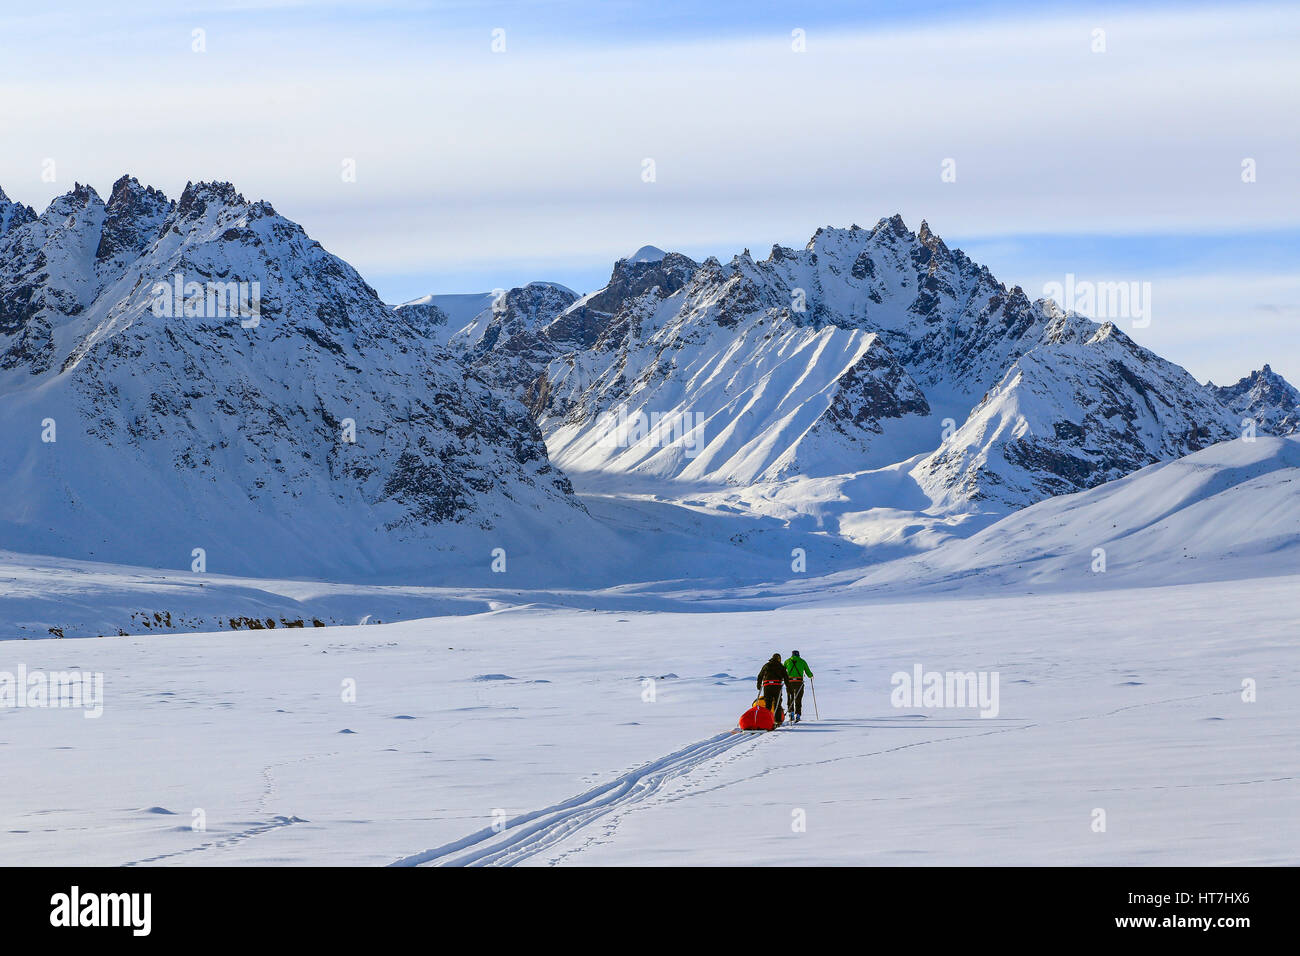 Bergsteigerteam ziehen der Pulk Schlitten auf dem Weg zu den Alpen Stauning In Grönland Stockfoto